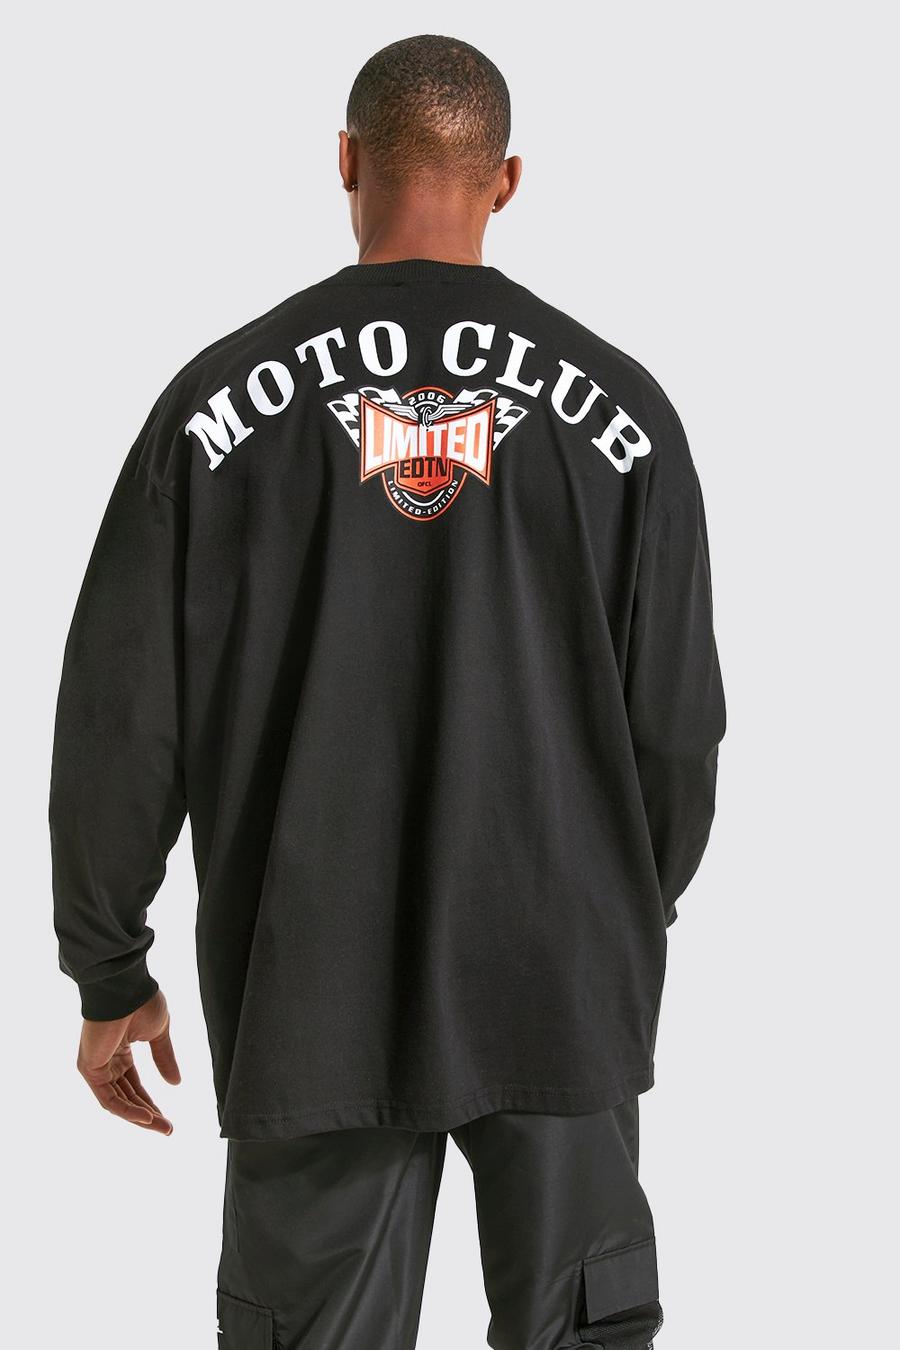 Black Oversized Moto Club Long Sleeve T-shirt image number 1